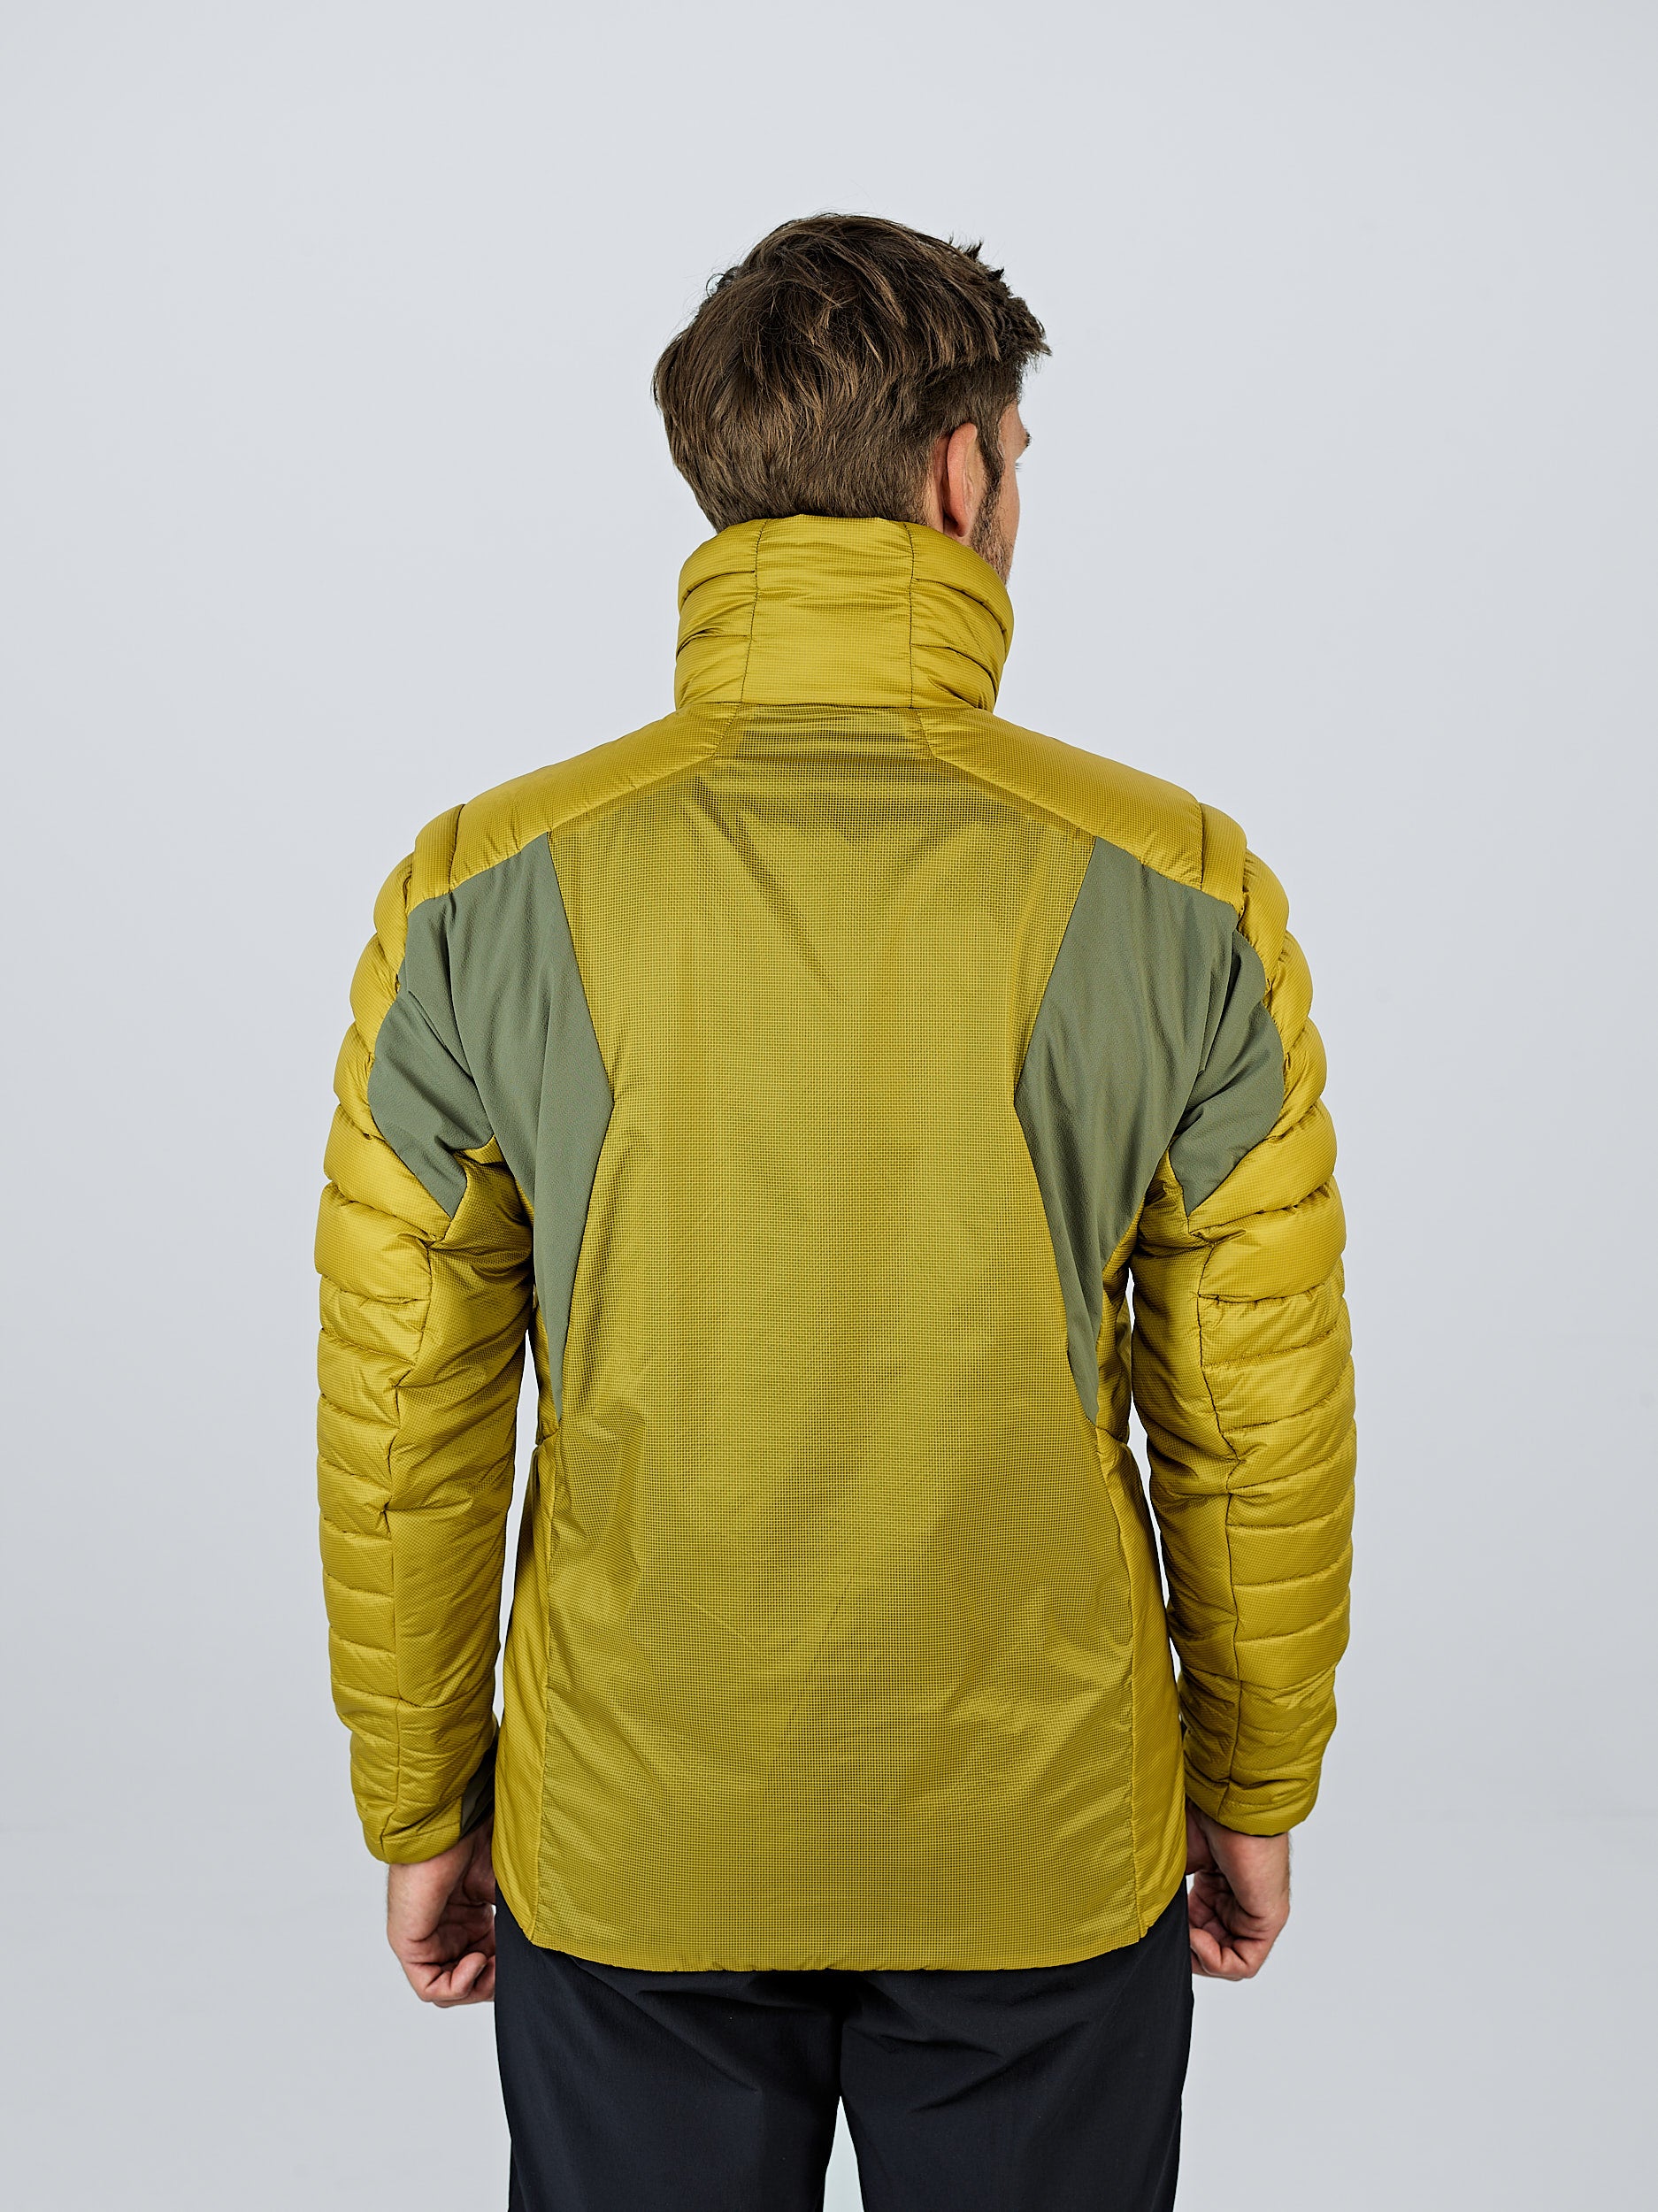 Eddie Bauer Quest 300 Fleece Jacket in Green for Men